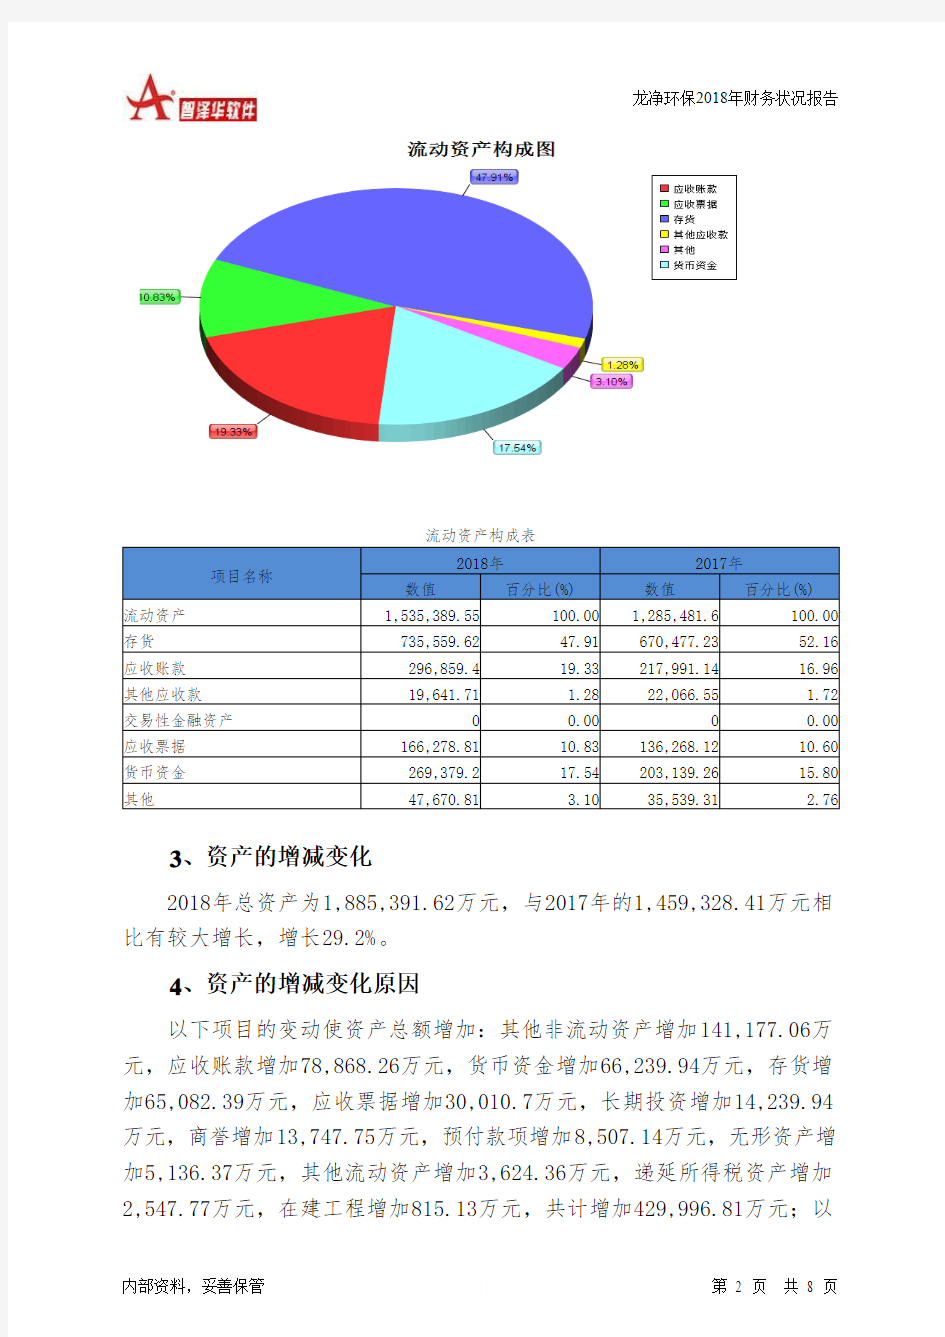 龙净环保2018年财务状况报告-智泽华